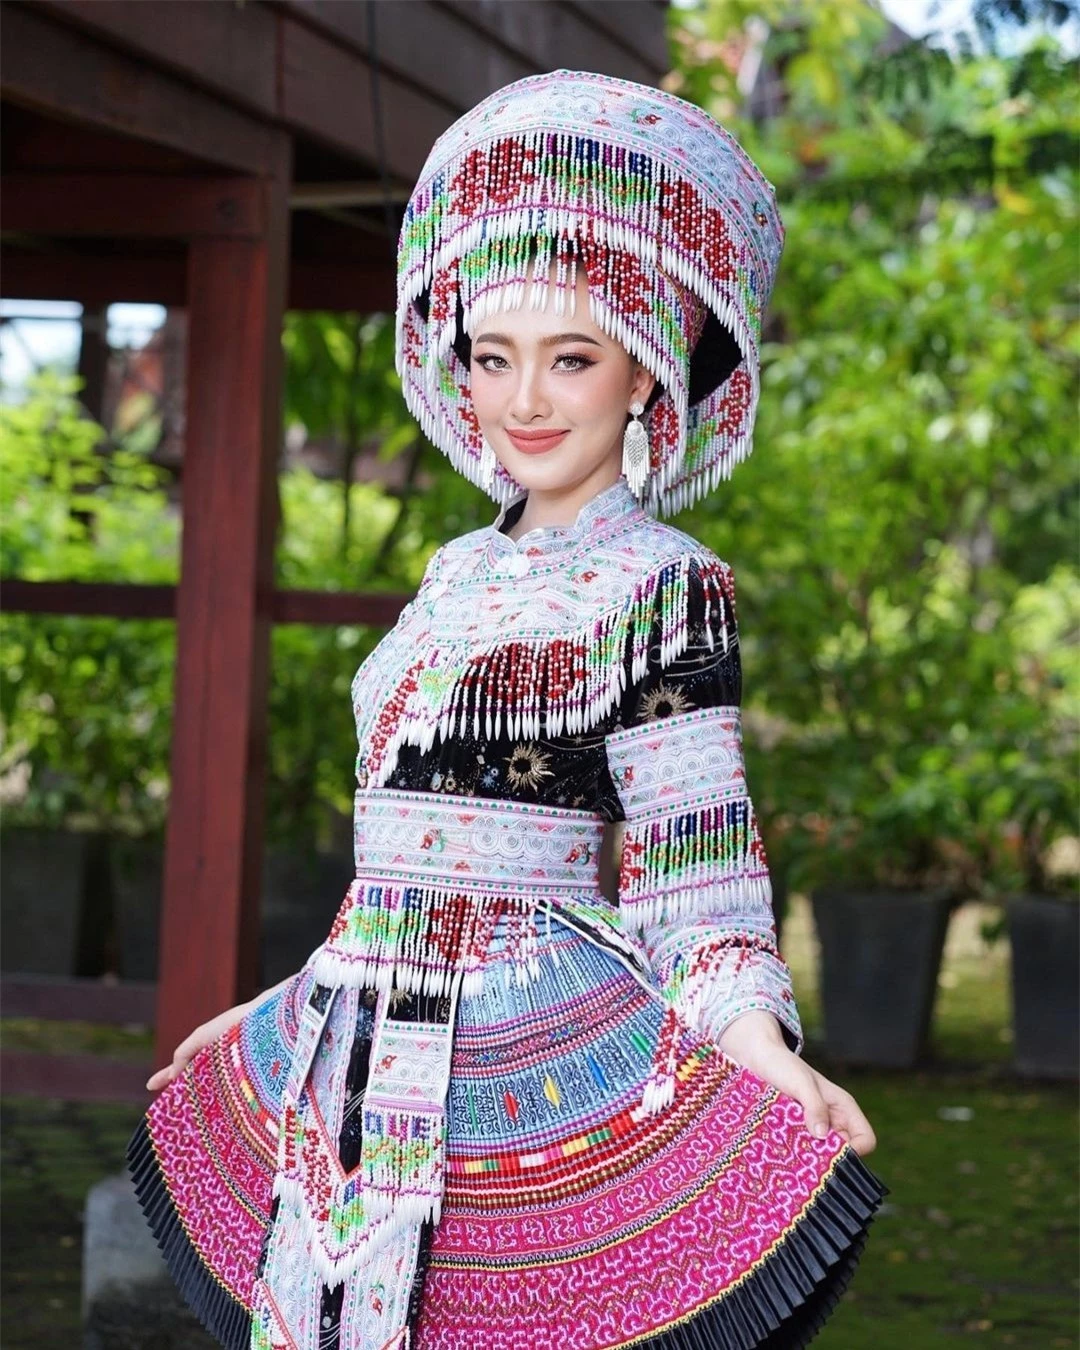 Nhan sắc đời thường người đẹp Lào sang Việt Nam thi hoa hậu ảnh 17